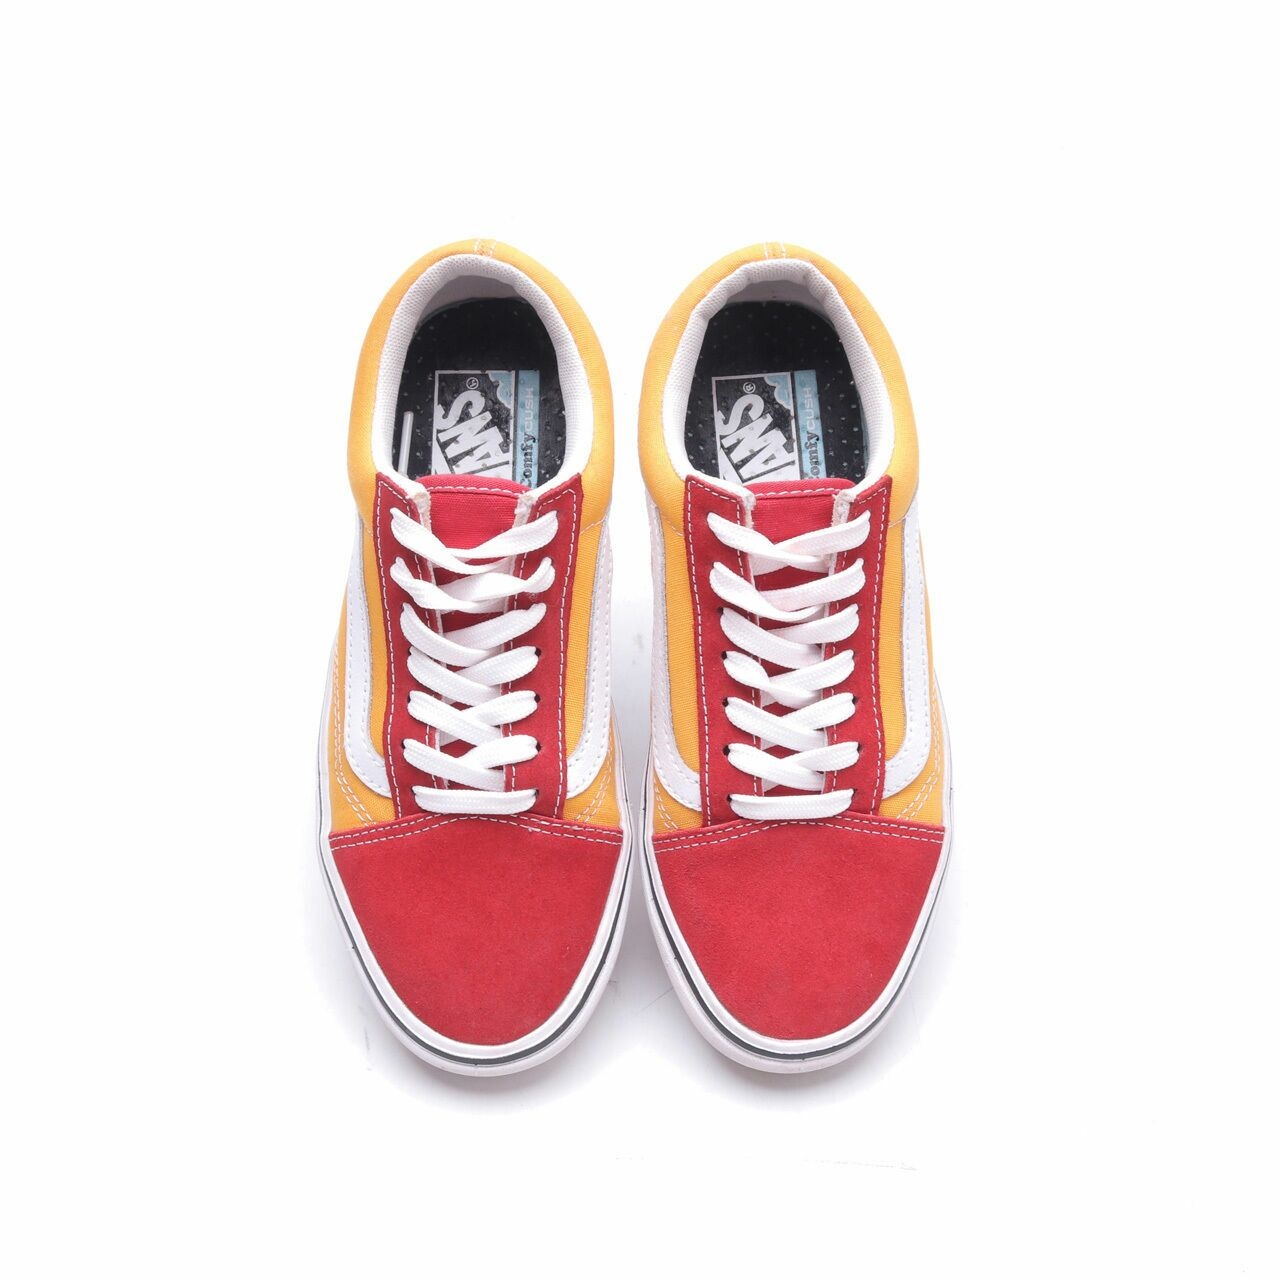 Vans Comfycush Old Skool Red & Yellow Sneakers